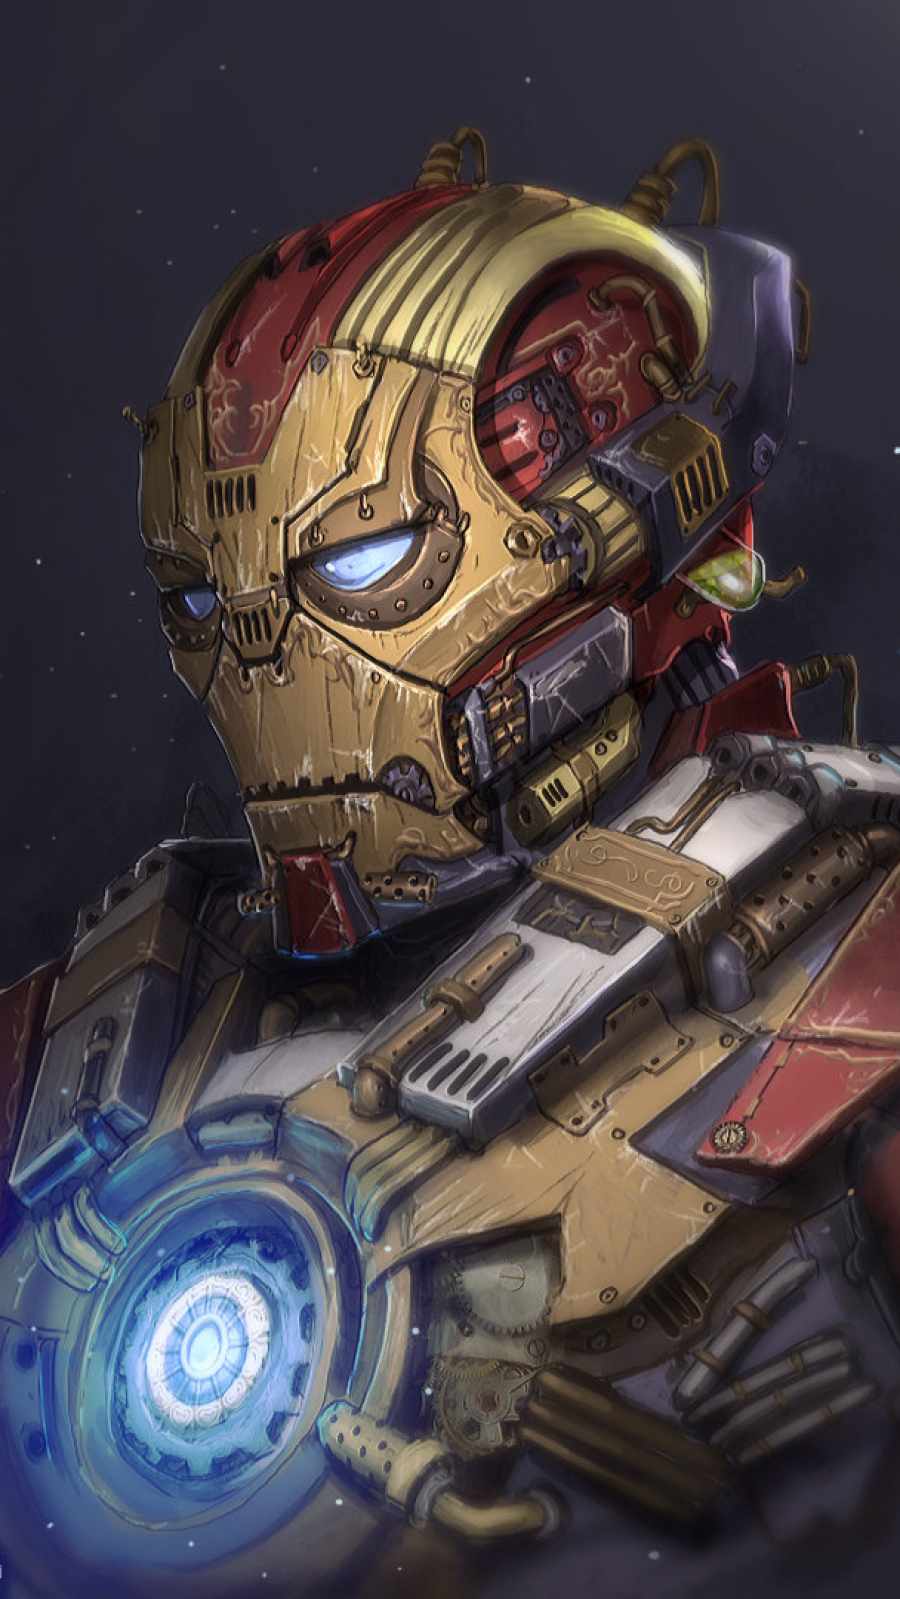 Iron Man Retro Suit iPhone Wallpaper